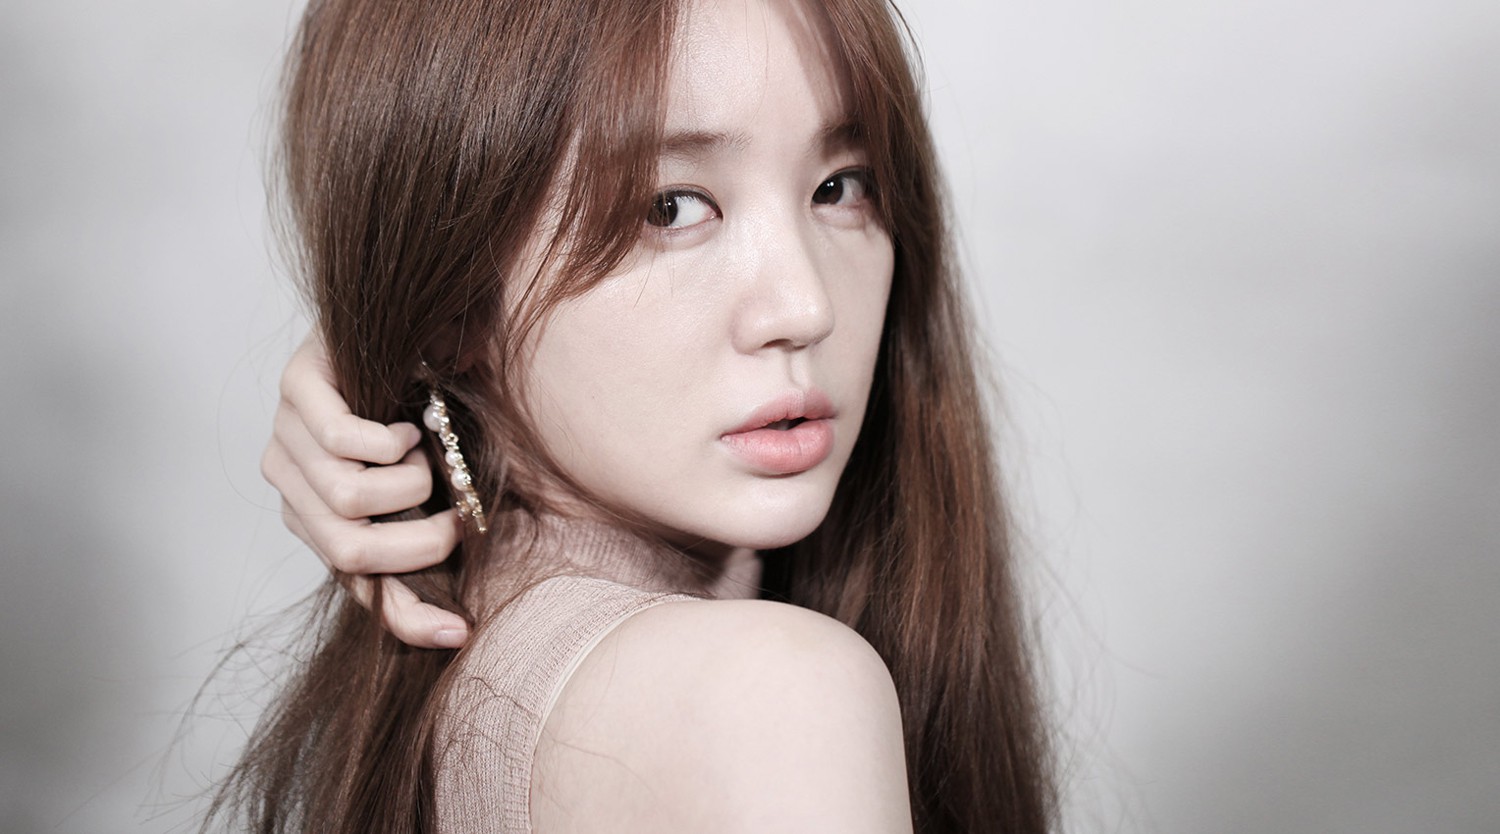 Yoon Eun Hye 윤은혜 ♡ ♡ ✨ - actors &amp; actresses - Soompi Forums